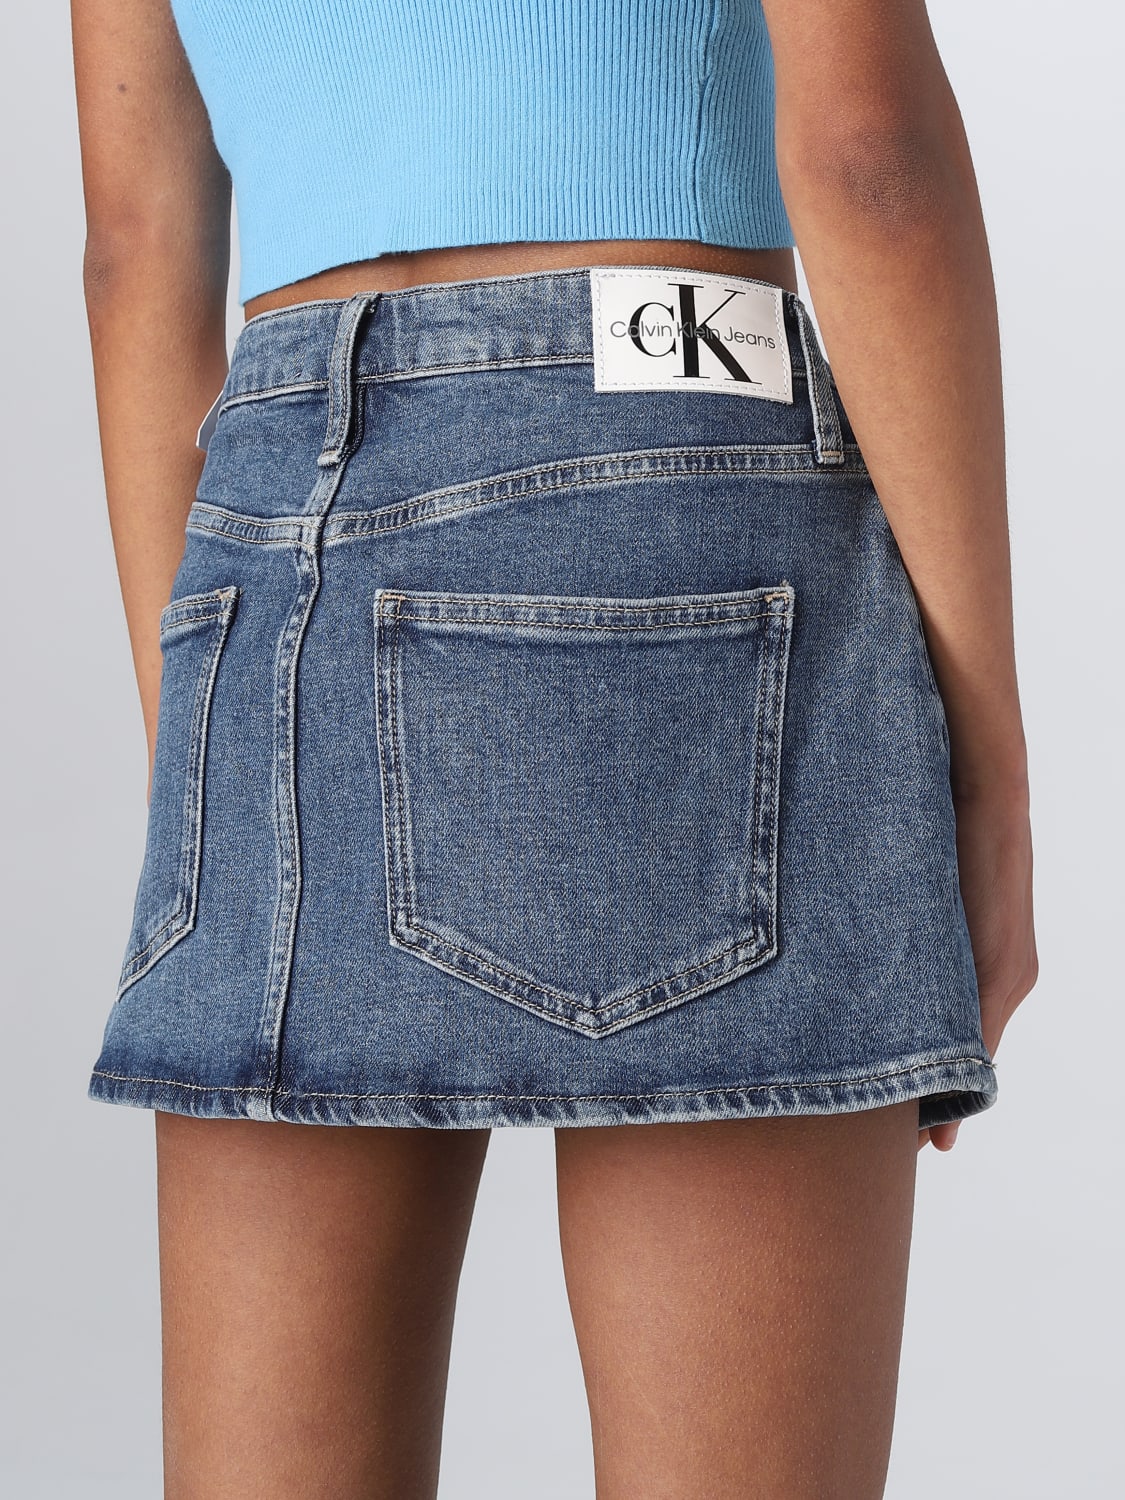 Jennie for Calvin Klein デニムスカート